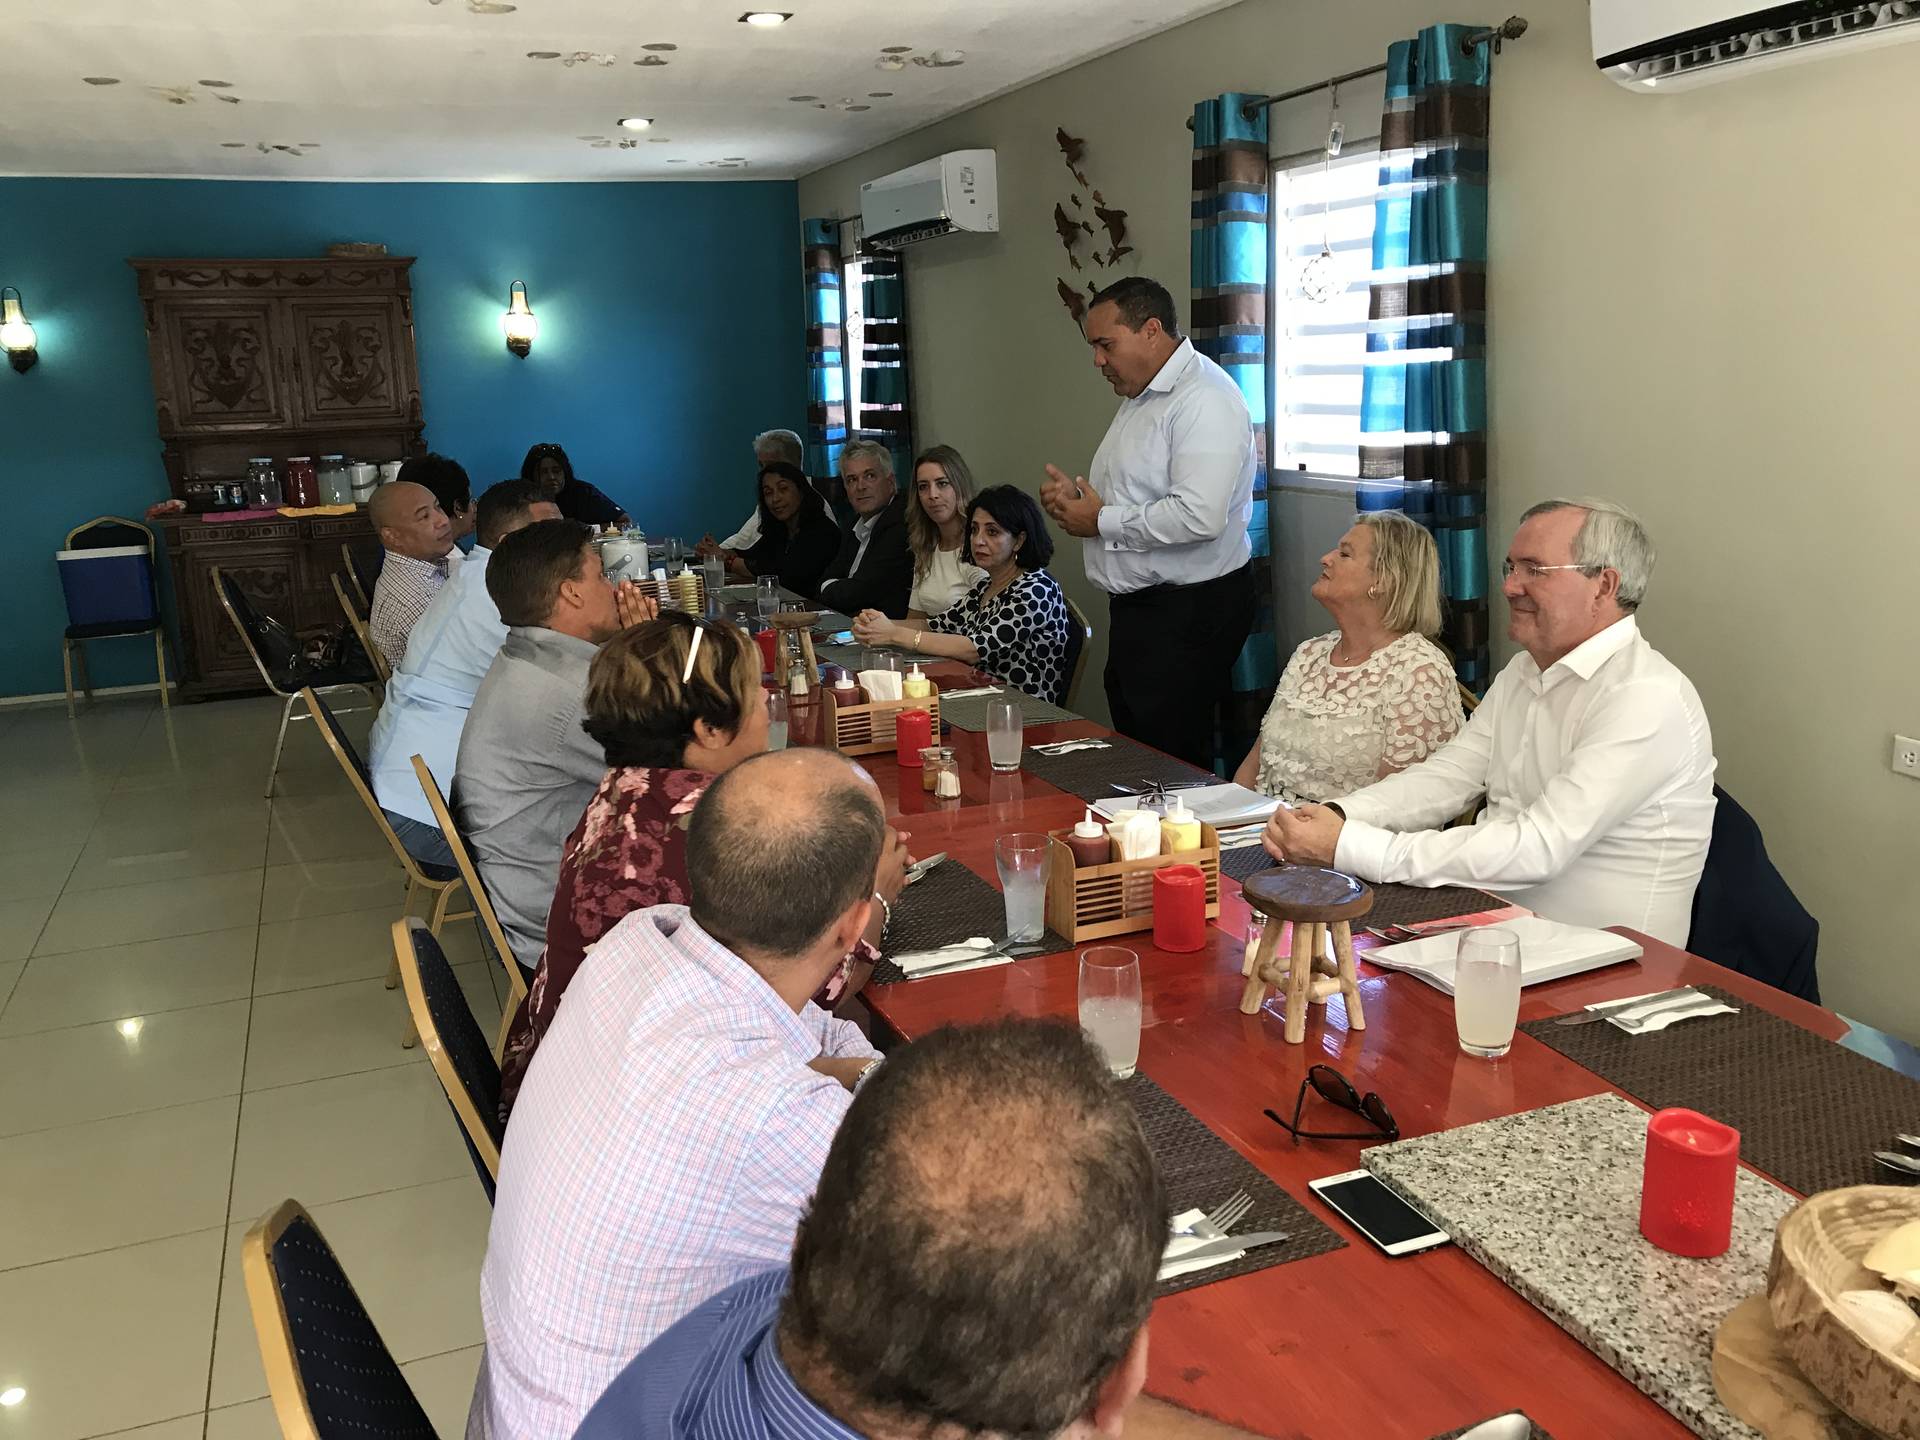 Gezaghebber Edison Rijna van Bonaire verwelkomt de Kamervoorzitters en leden van het Bestuurscollege en de Eilandsraad tijdens de lunch